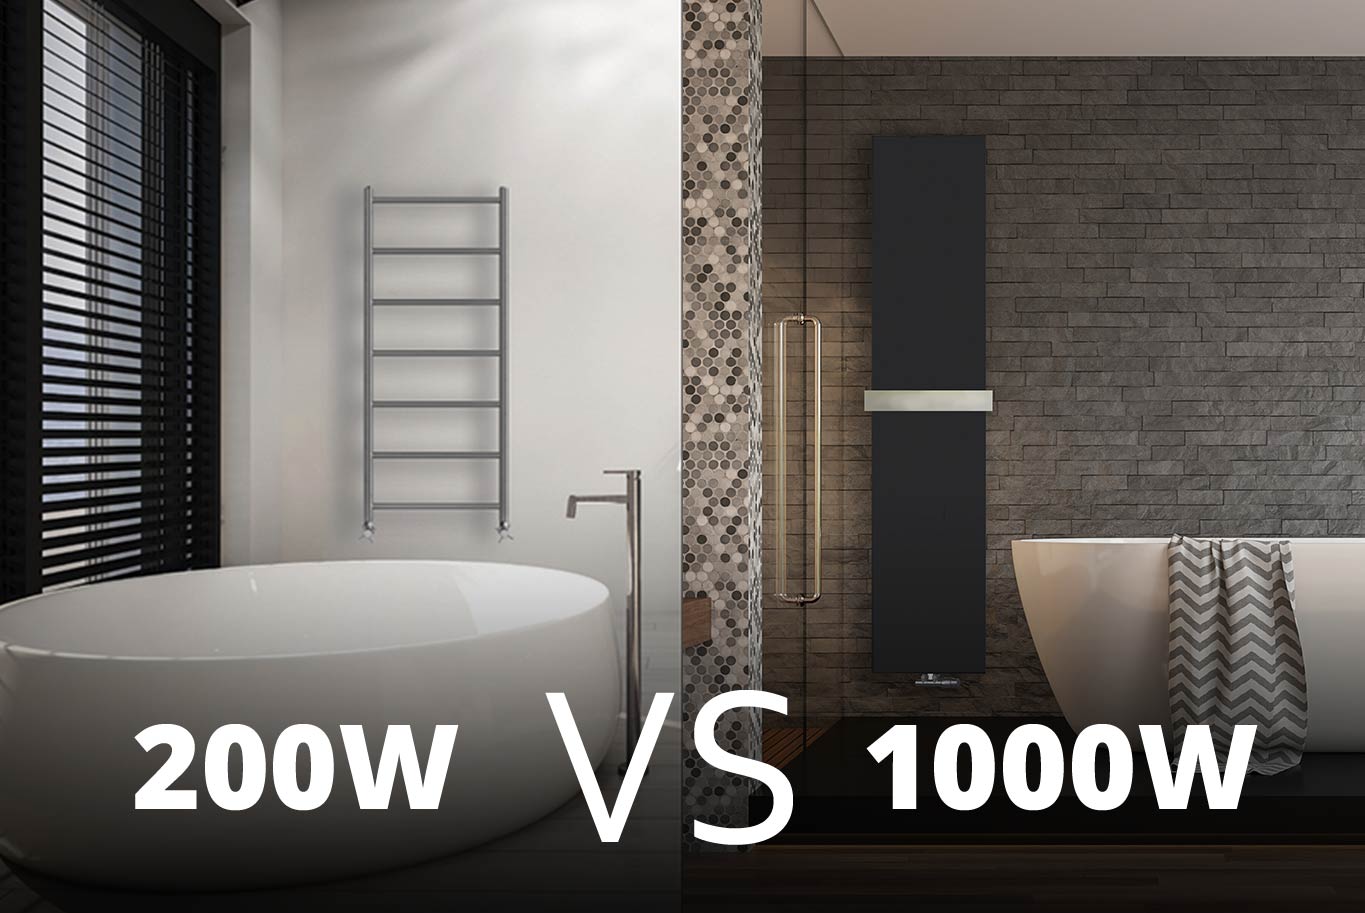 Grzejnik 200W, 300W, czy 1000W — jaki wybrać do łazienki?